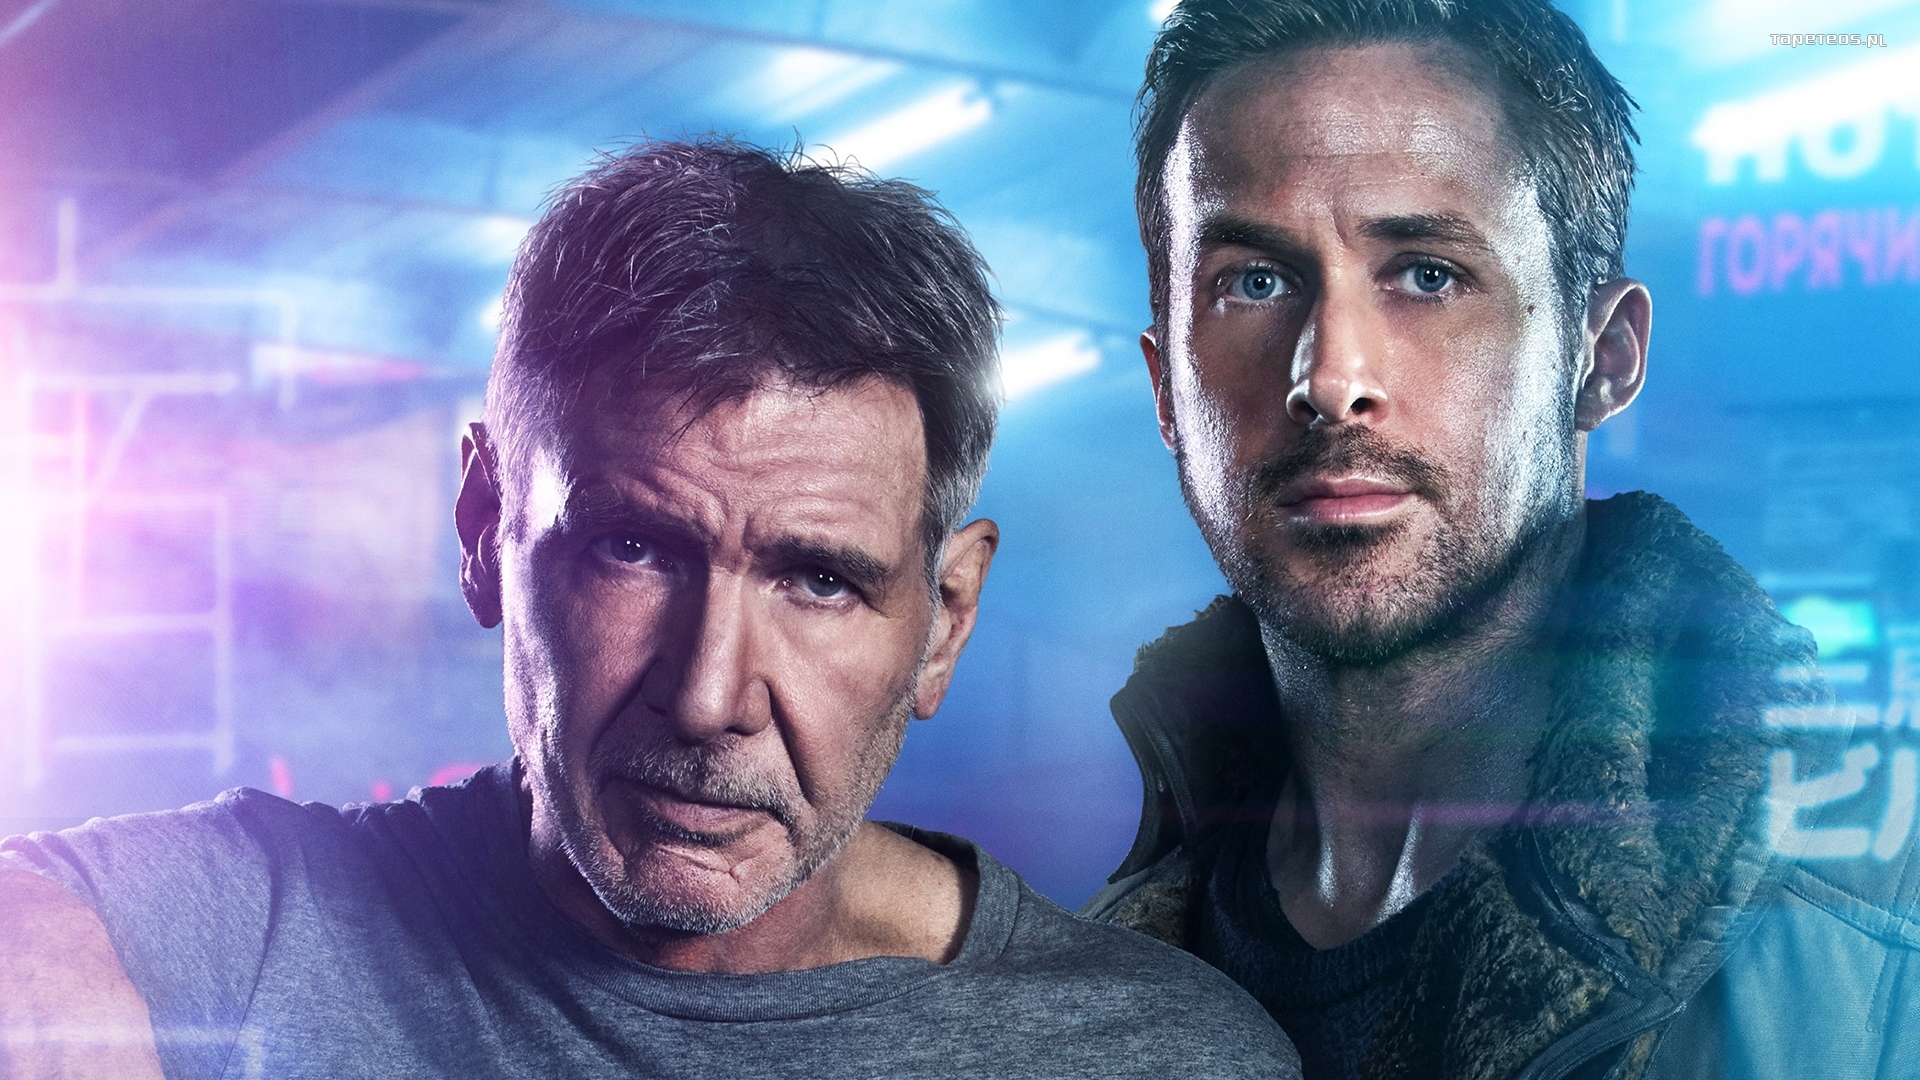 Blade Runner 2049 (2017) 005 Harrison Ford jako Rick Deckard, Ryan Gosling jako Oficer K